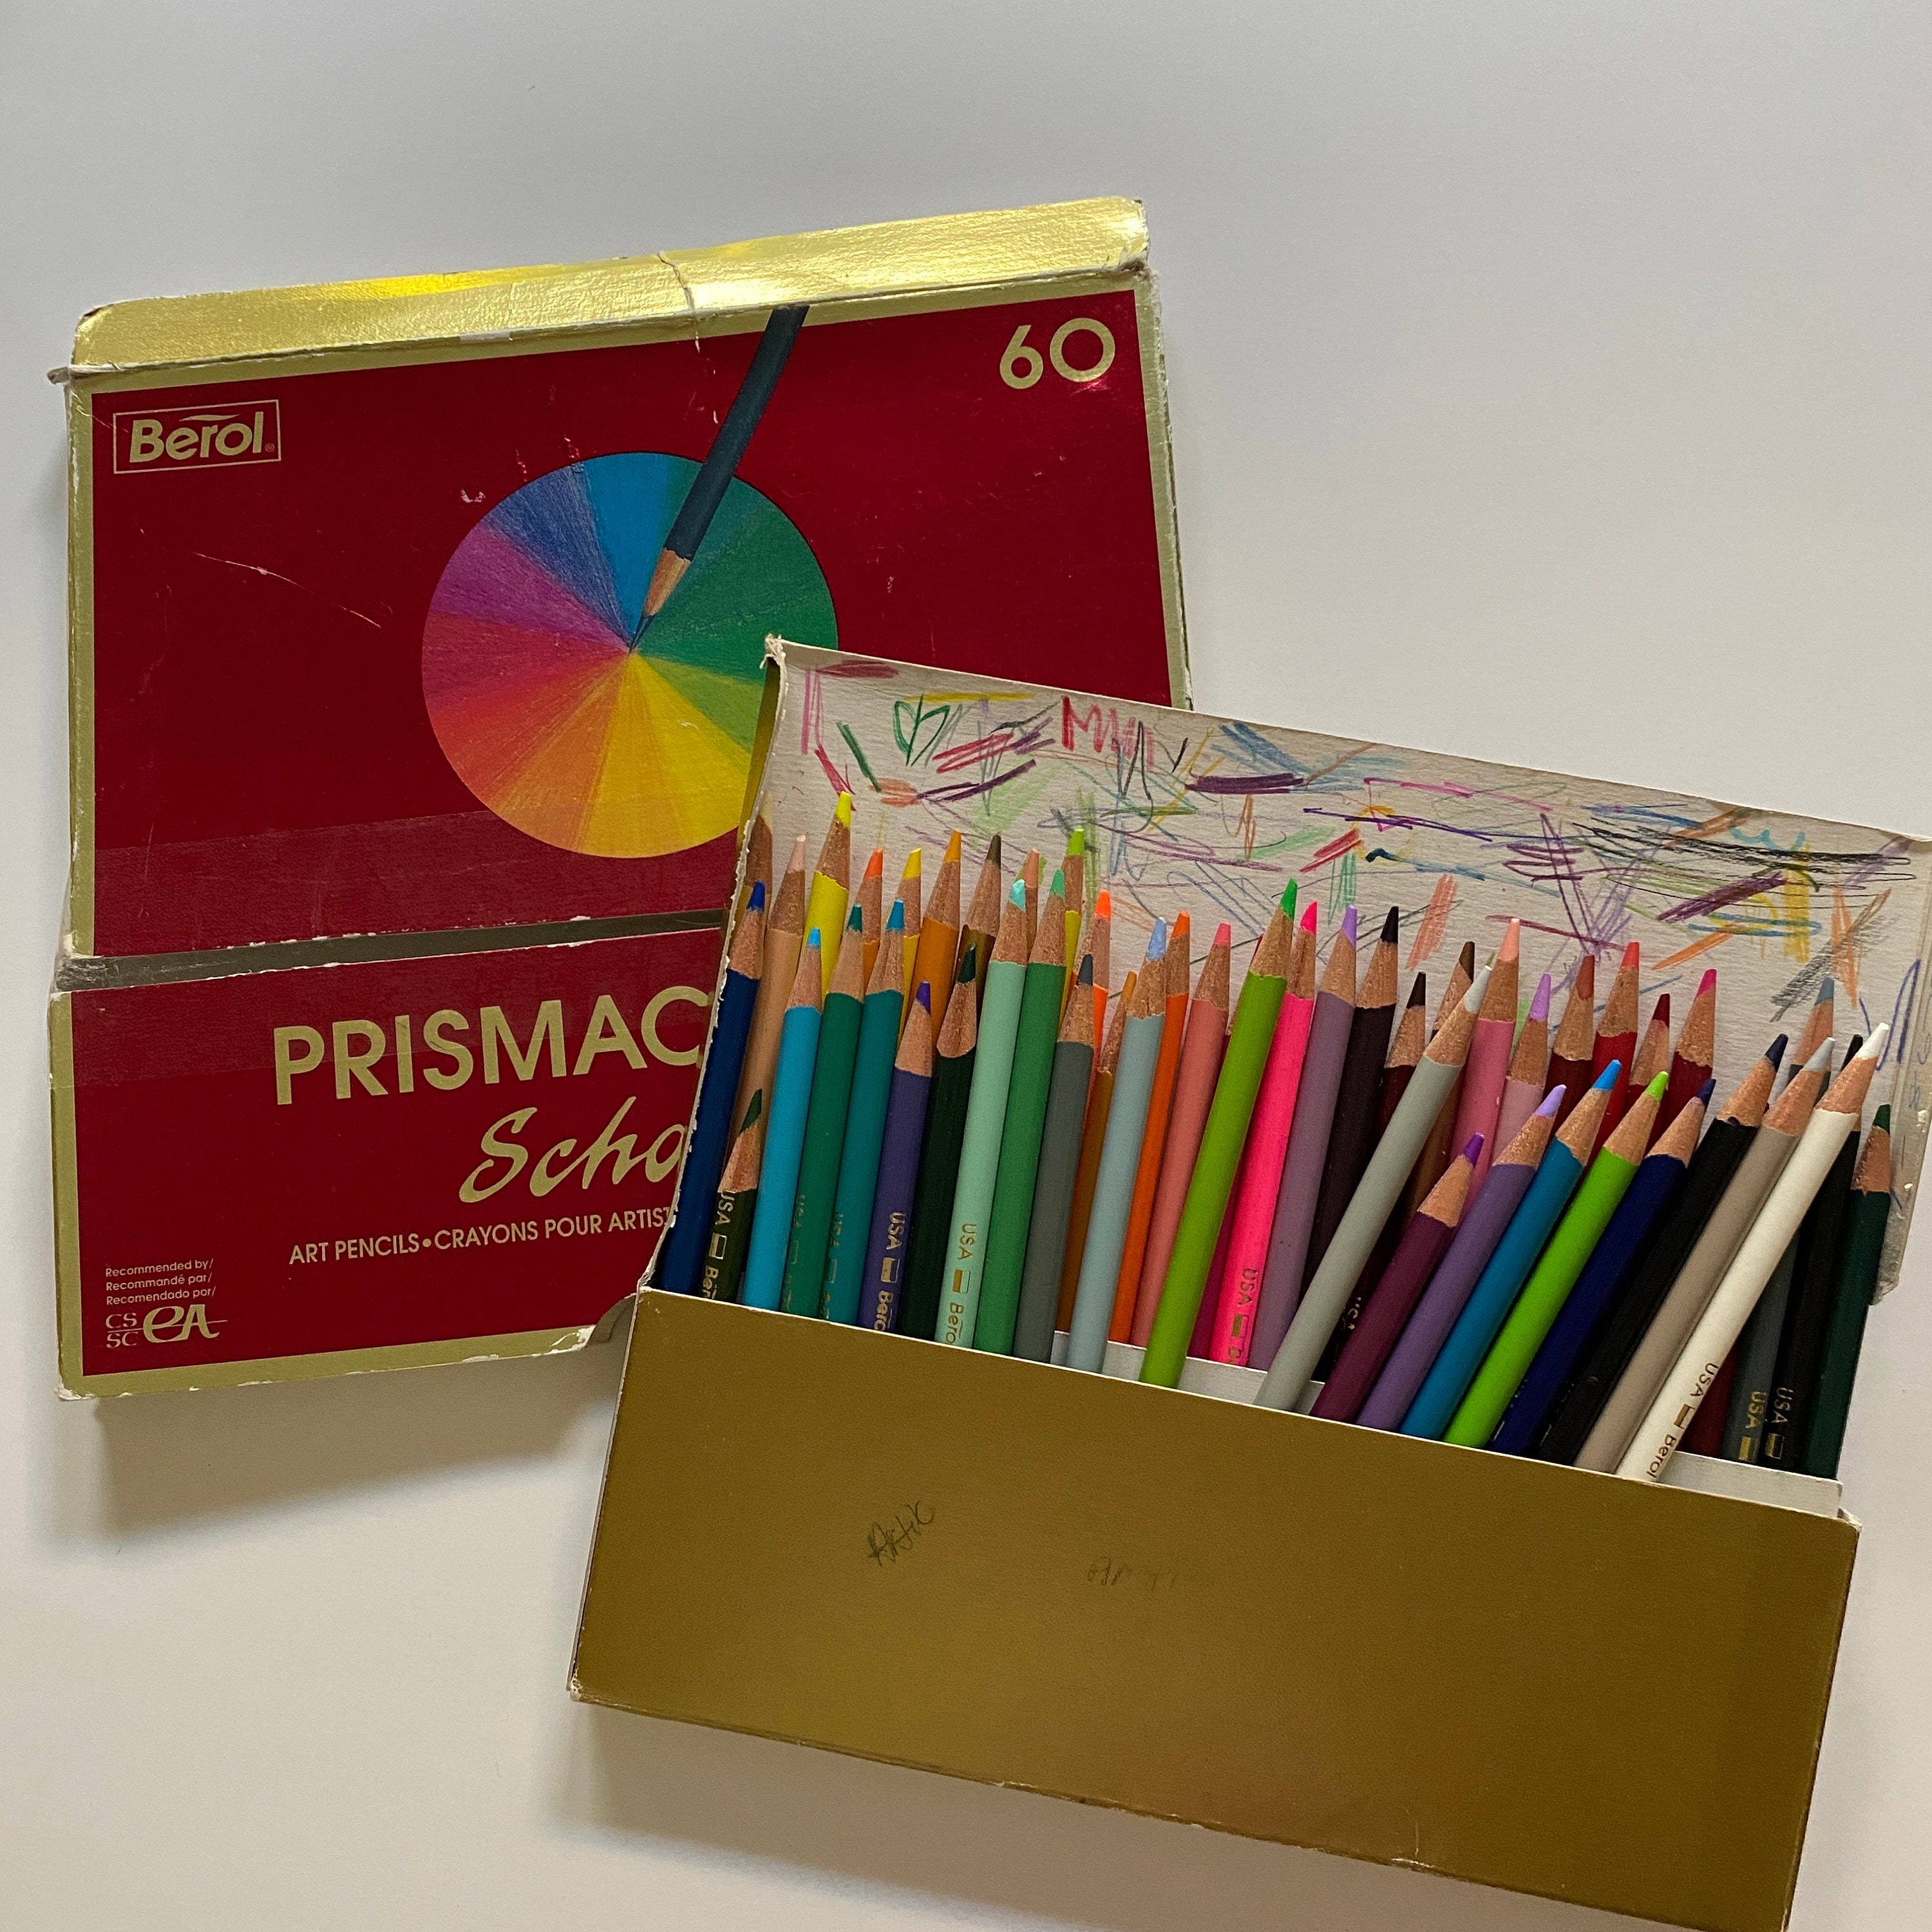 Ens. 60 crayons de bois Prismacolor scholar - Stylos et